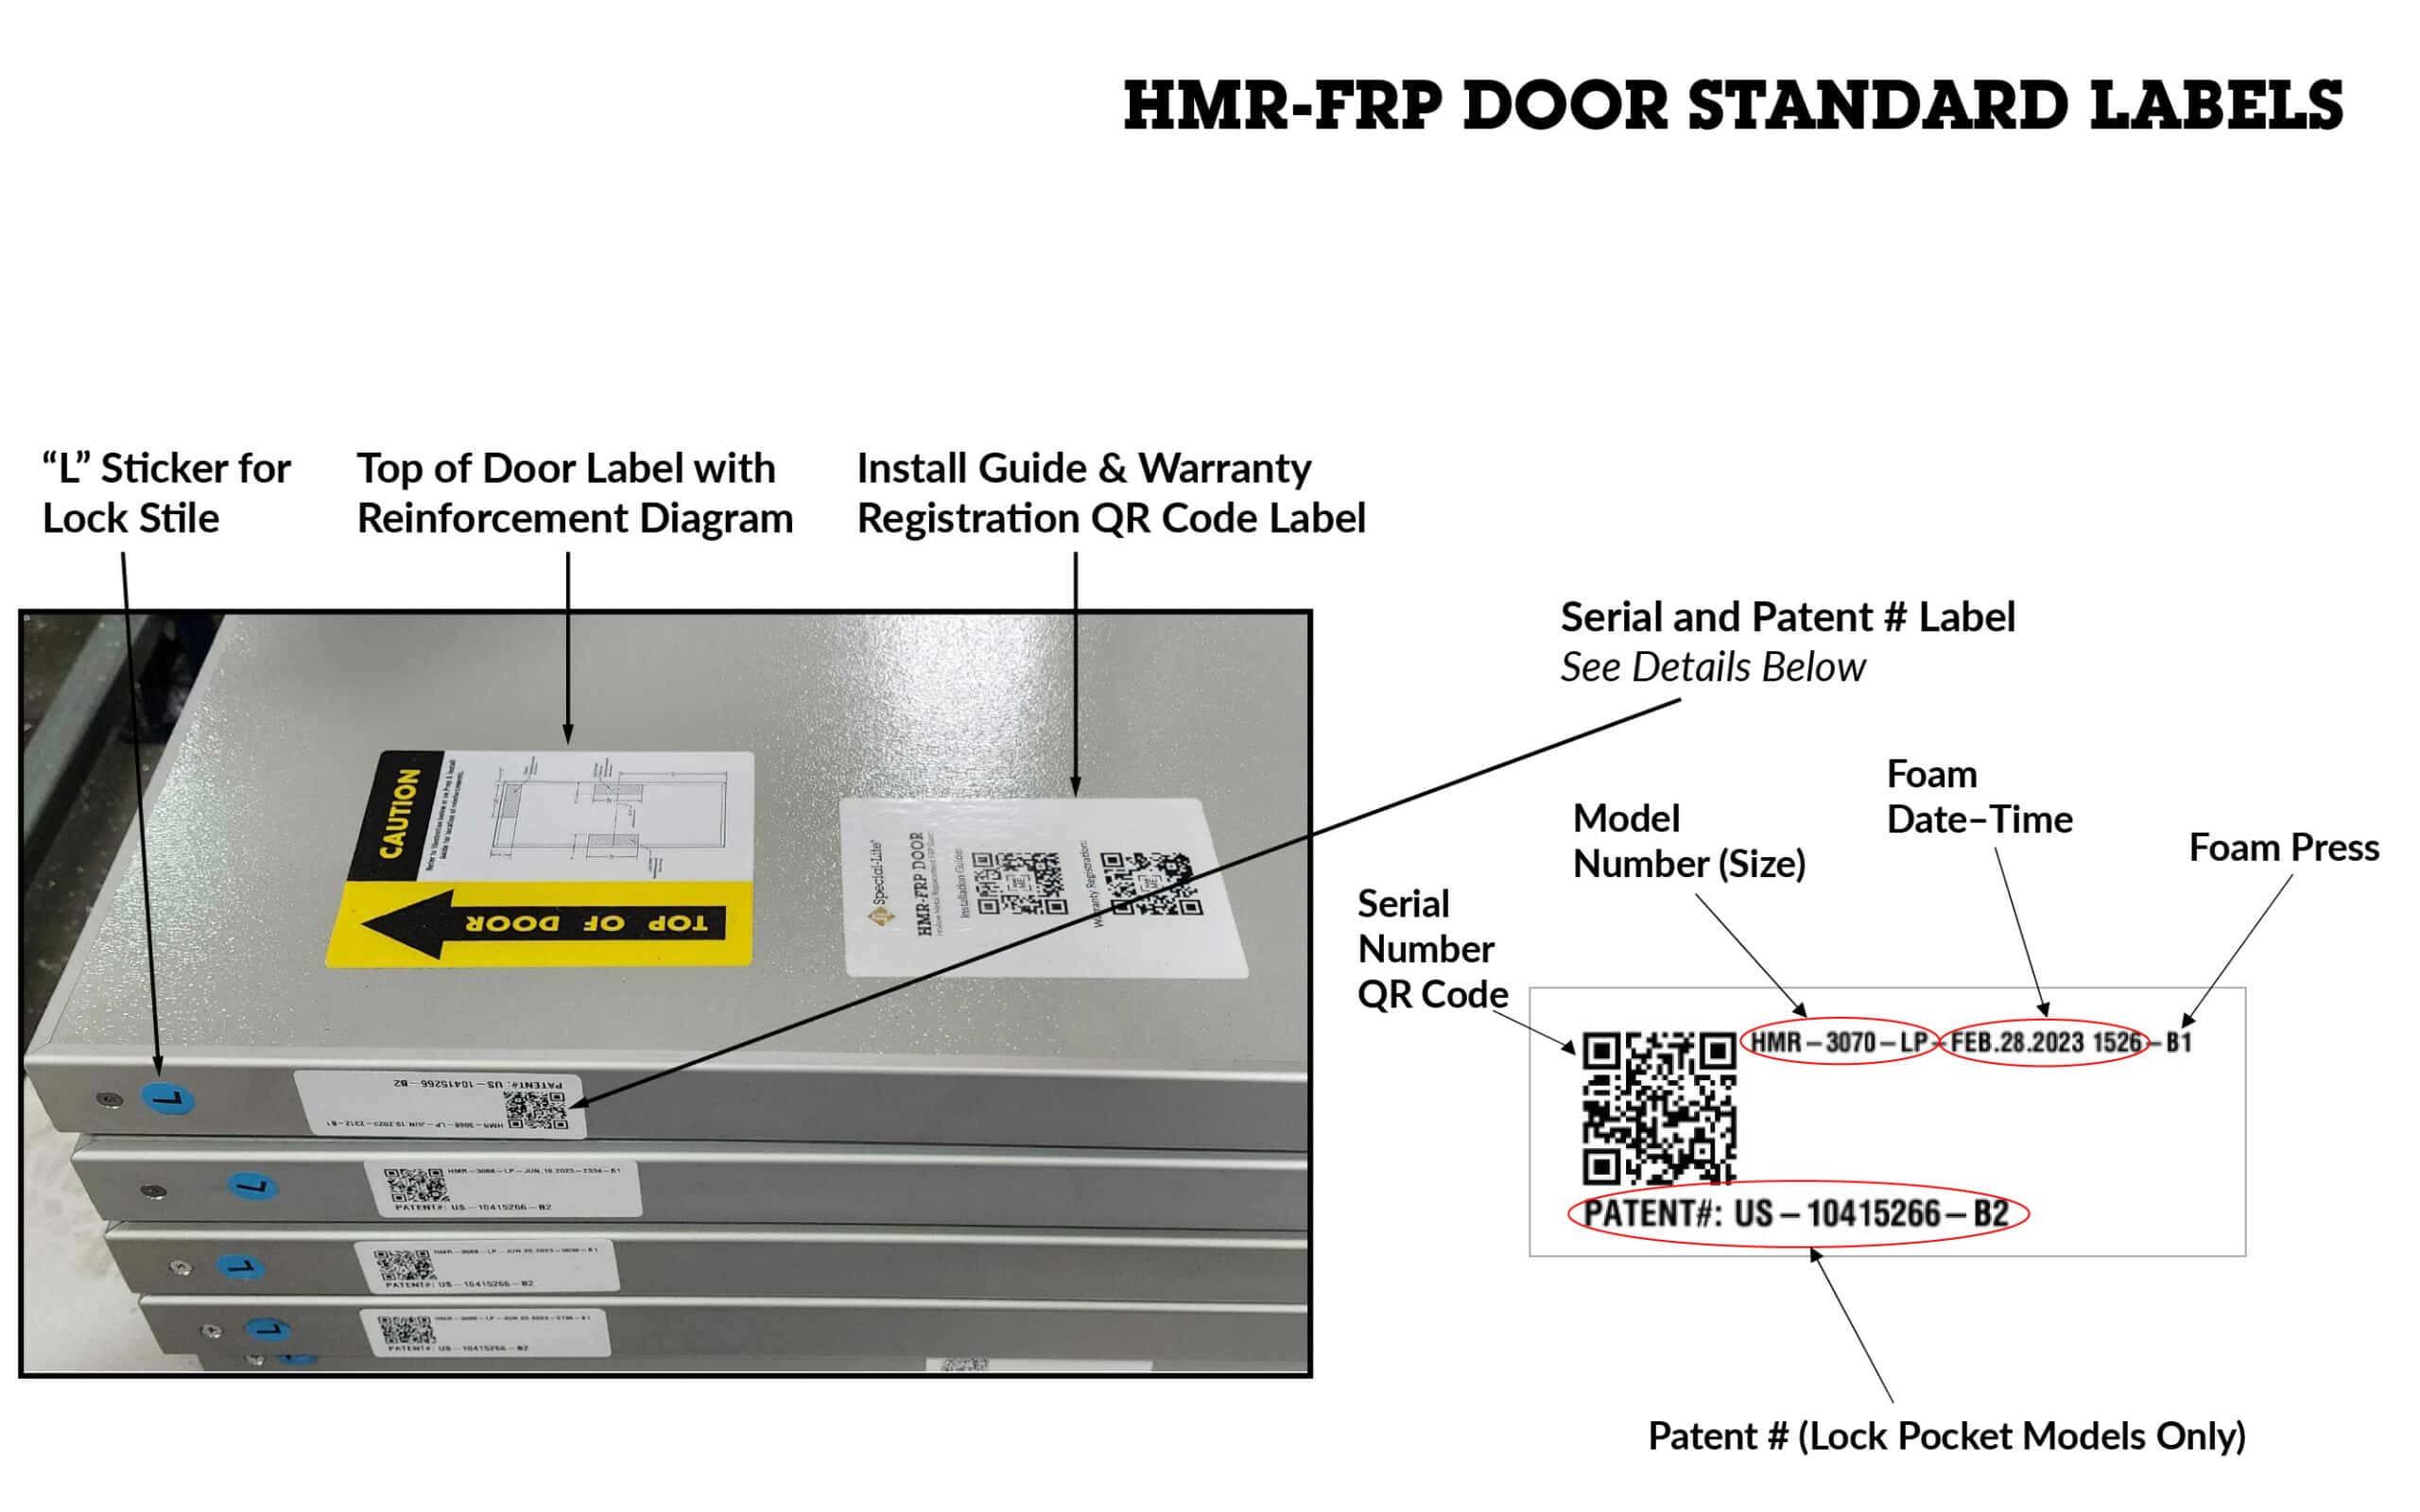 Standard labels for Hrp-doo doors.